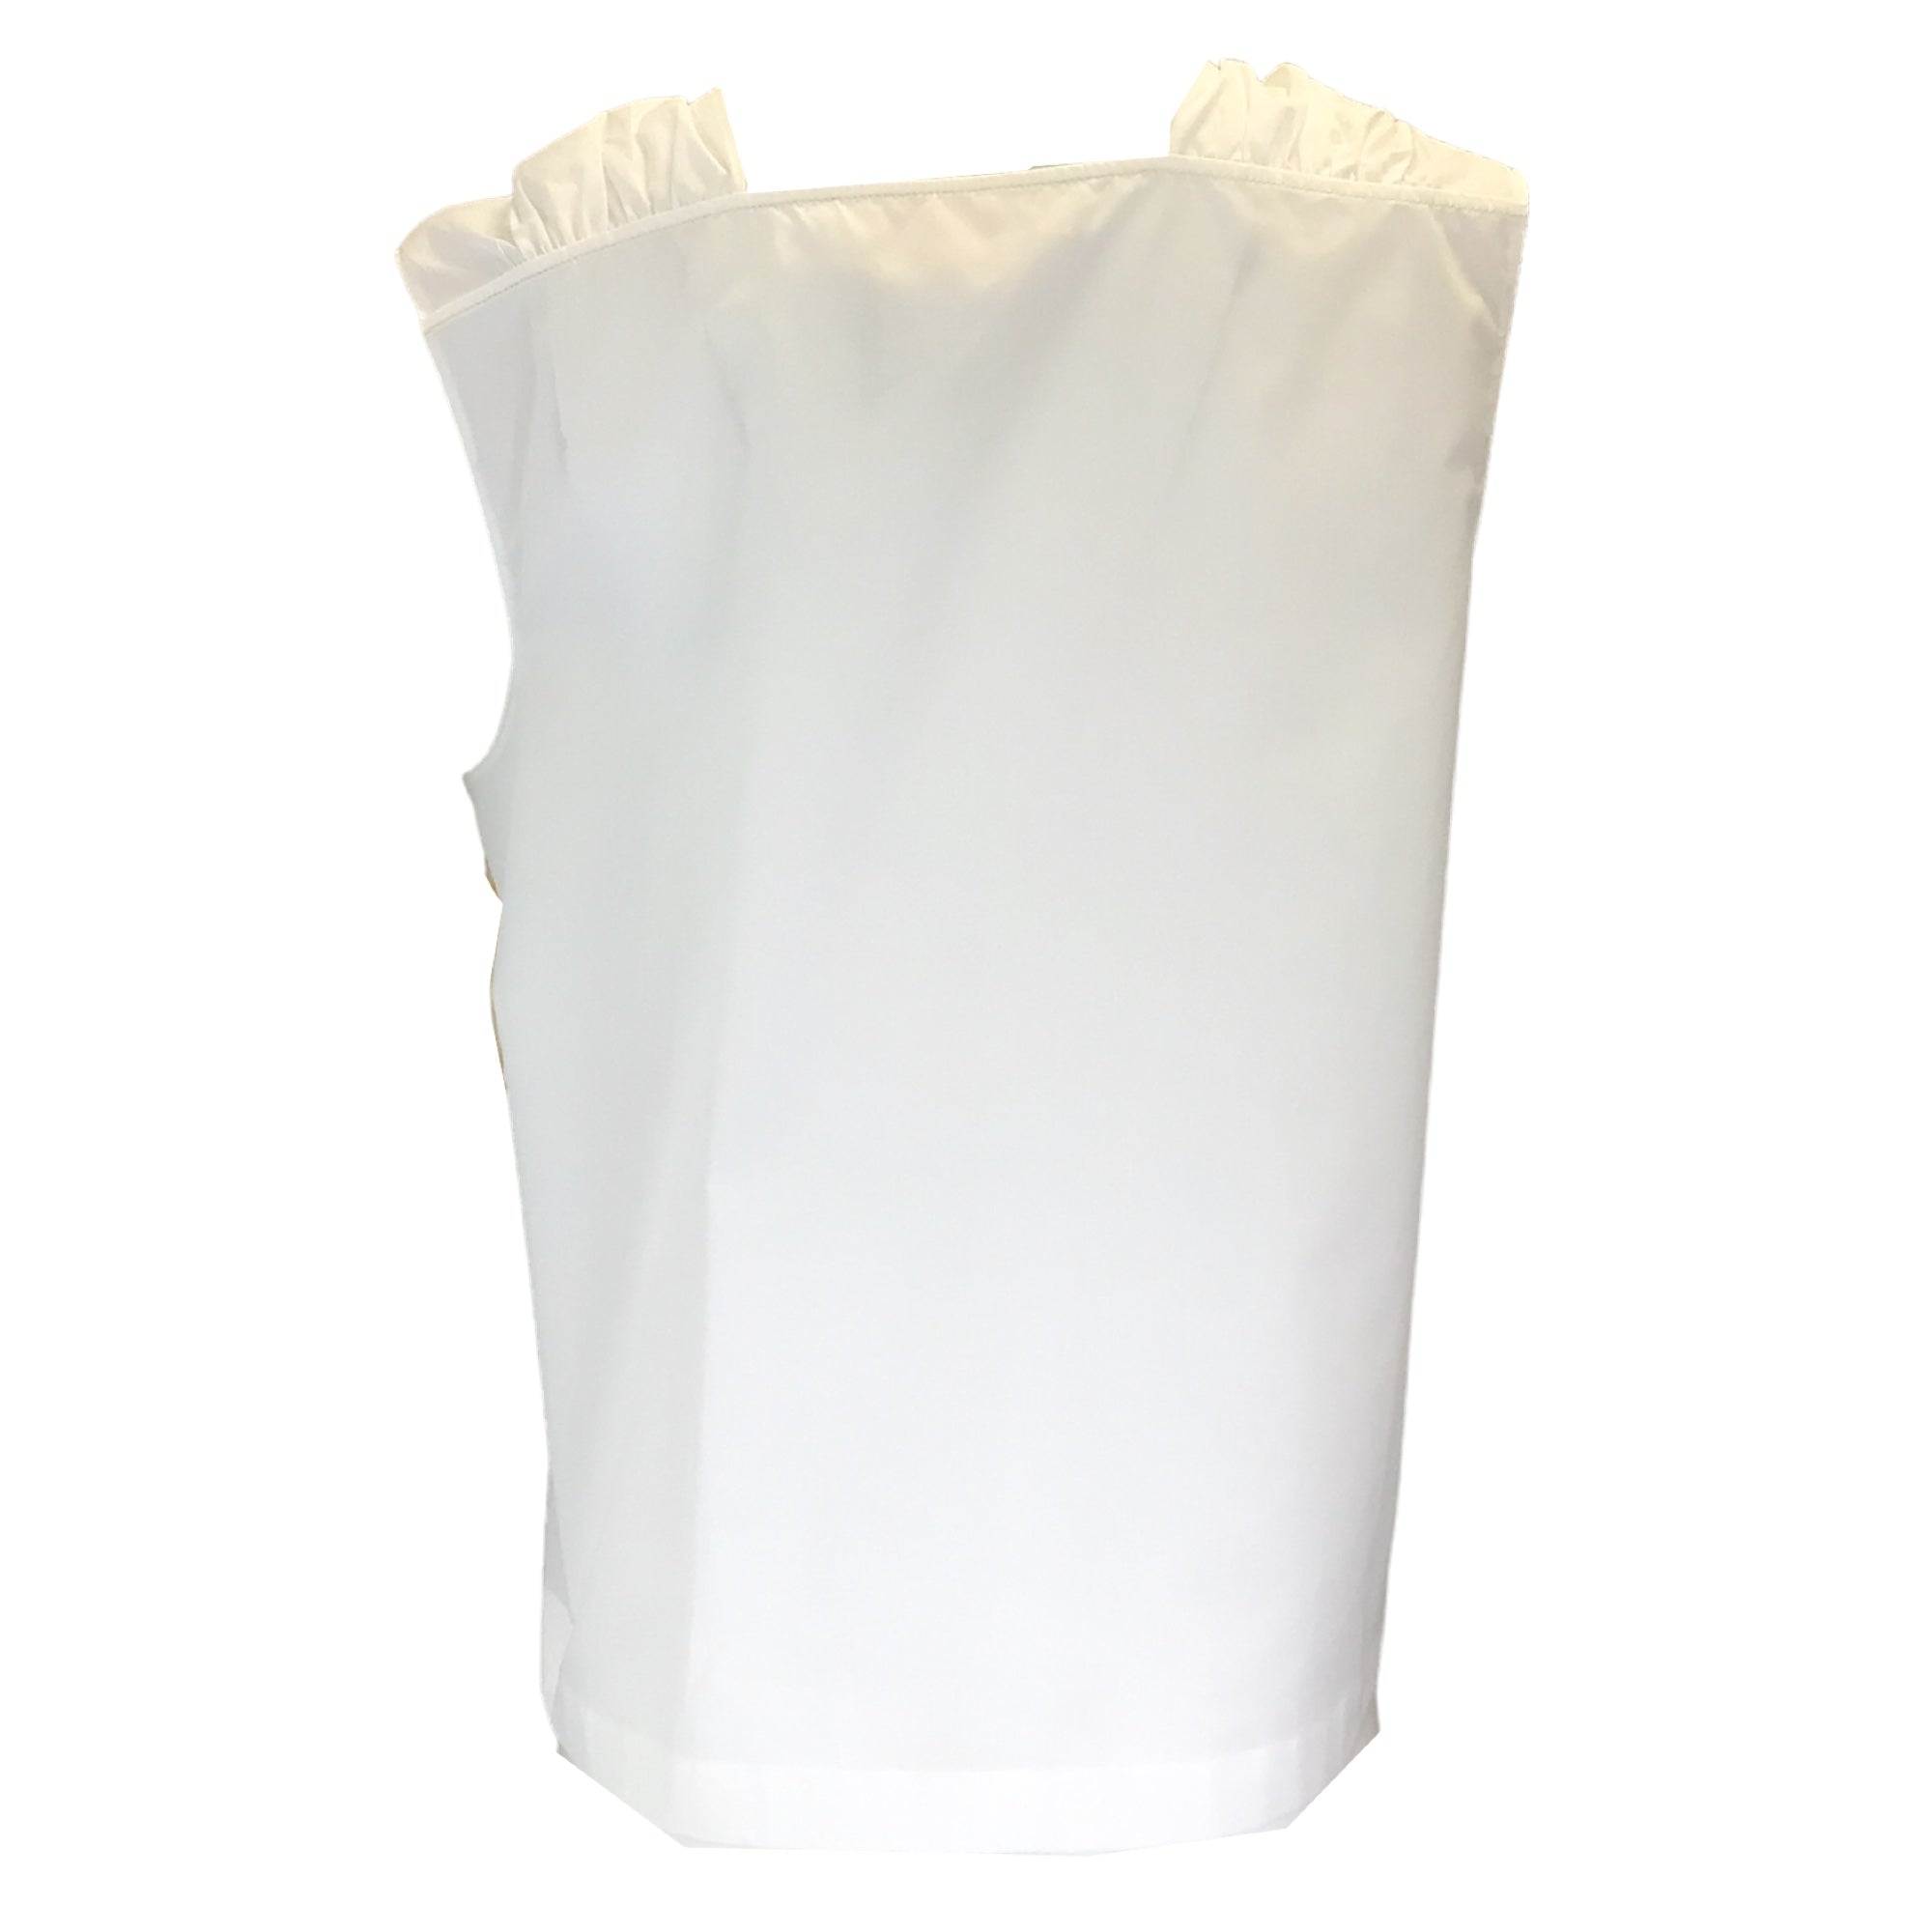 Marni White Sleeveless Cotton Top